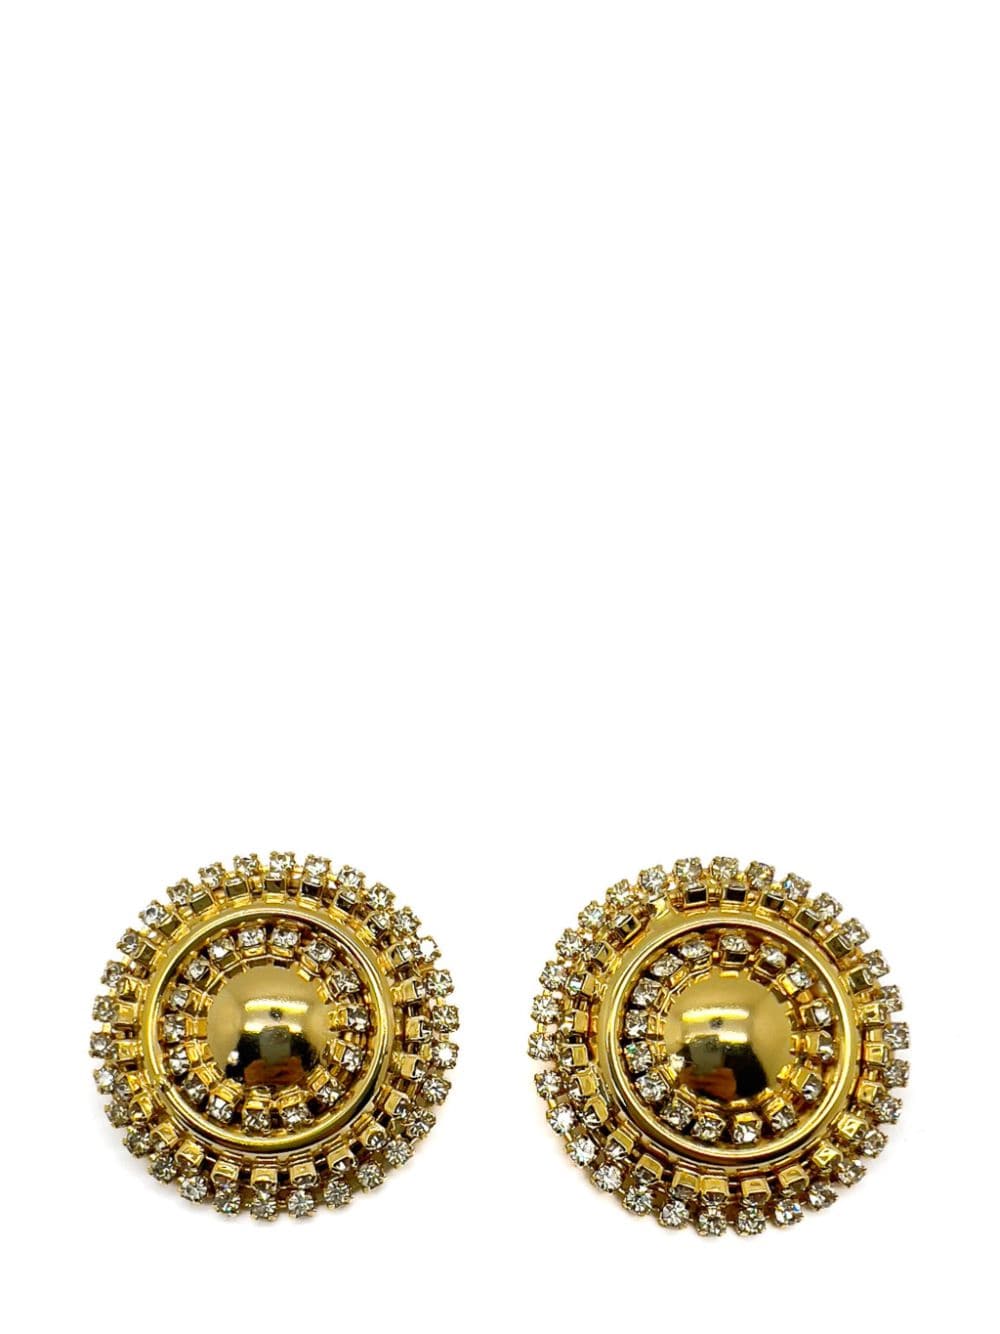 Jennifer Gibson Vintage Gold &amp; Crystal Statement Bullseye Earrings 1980s - Oro